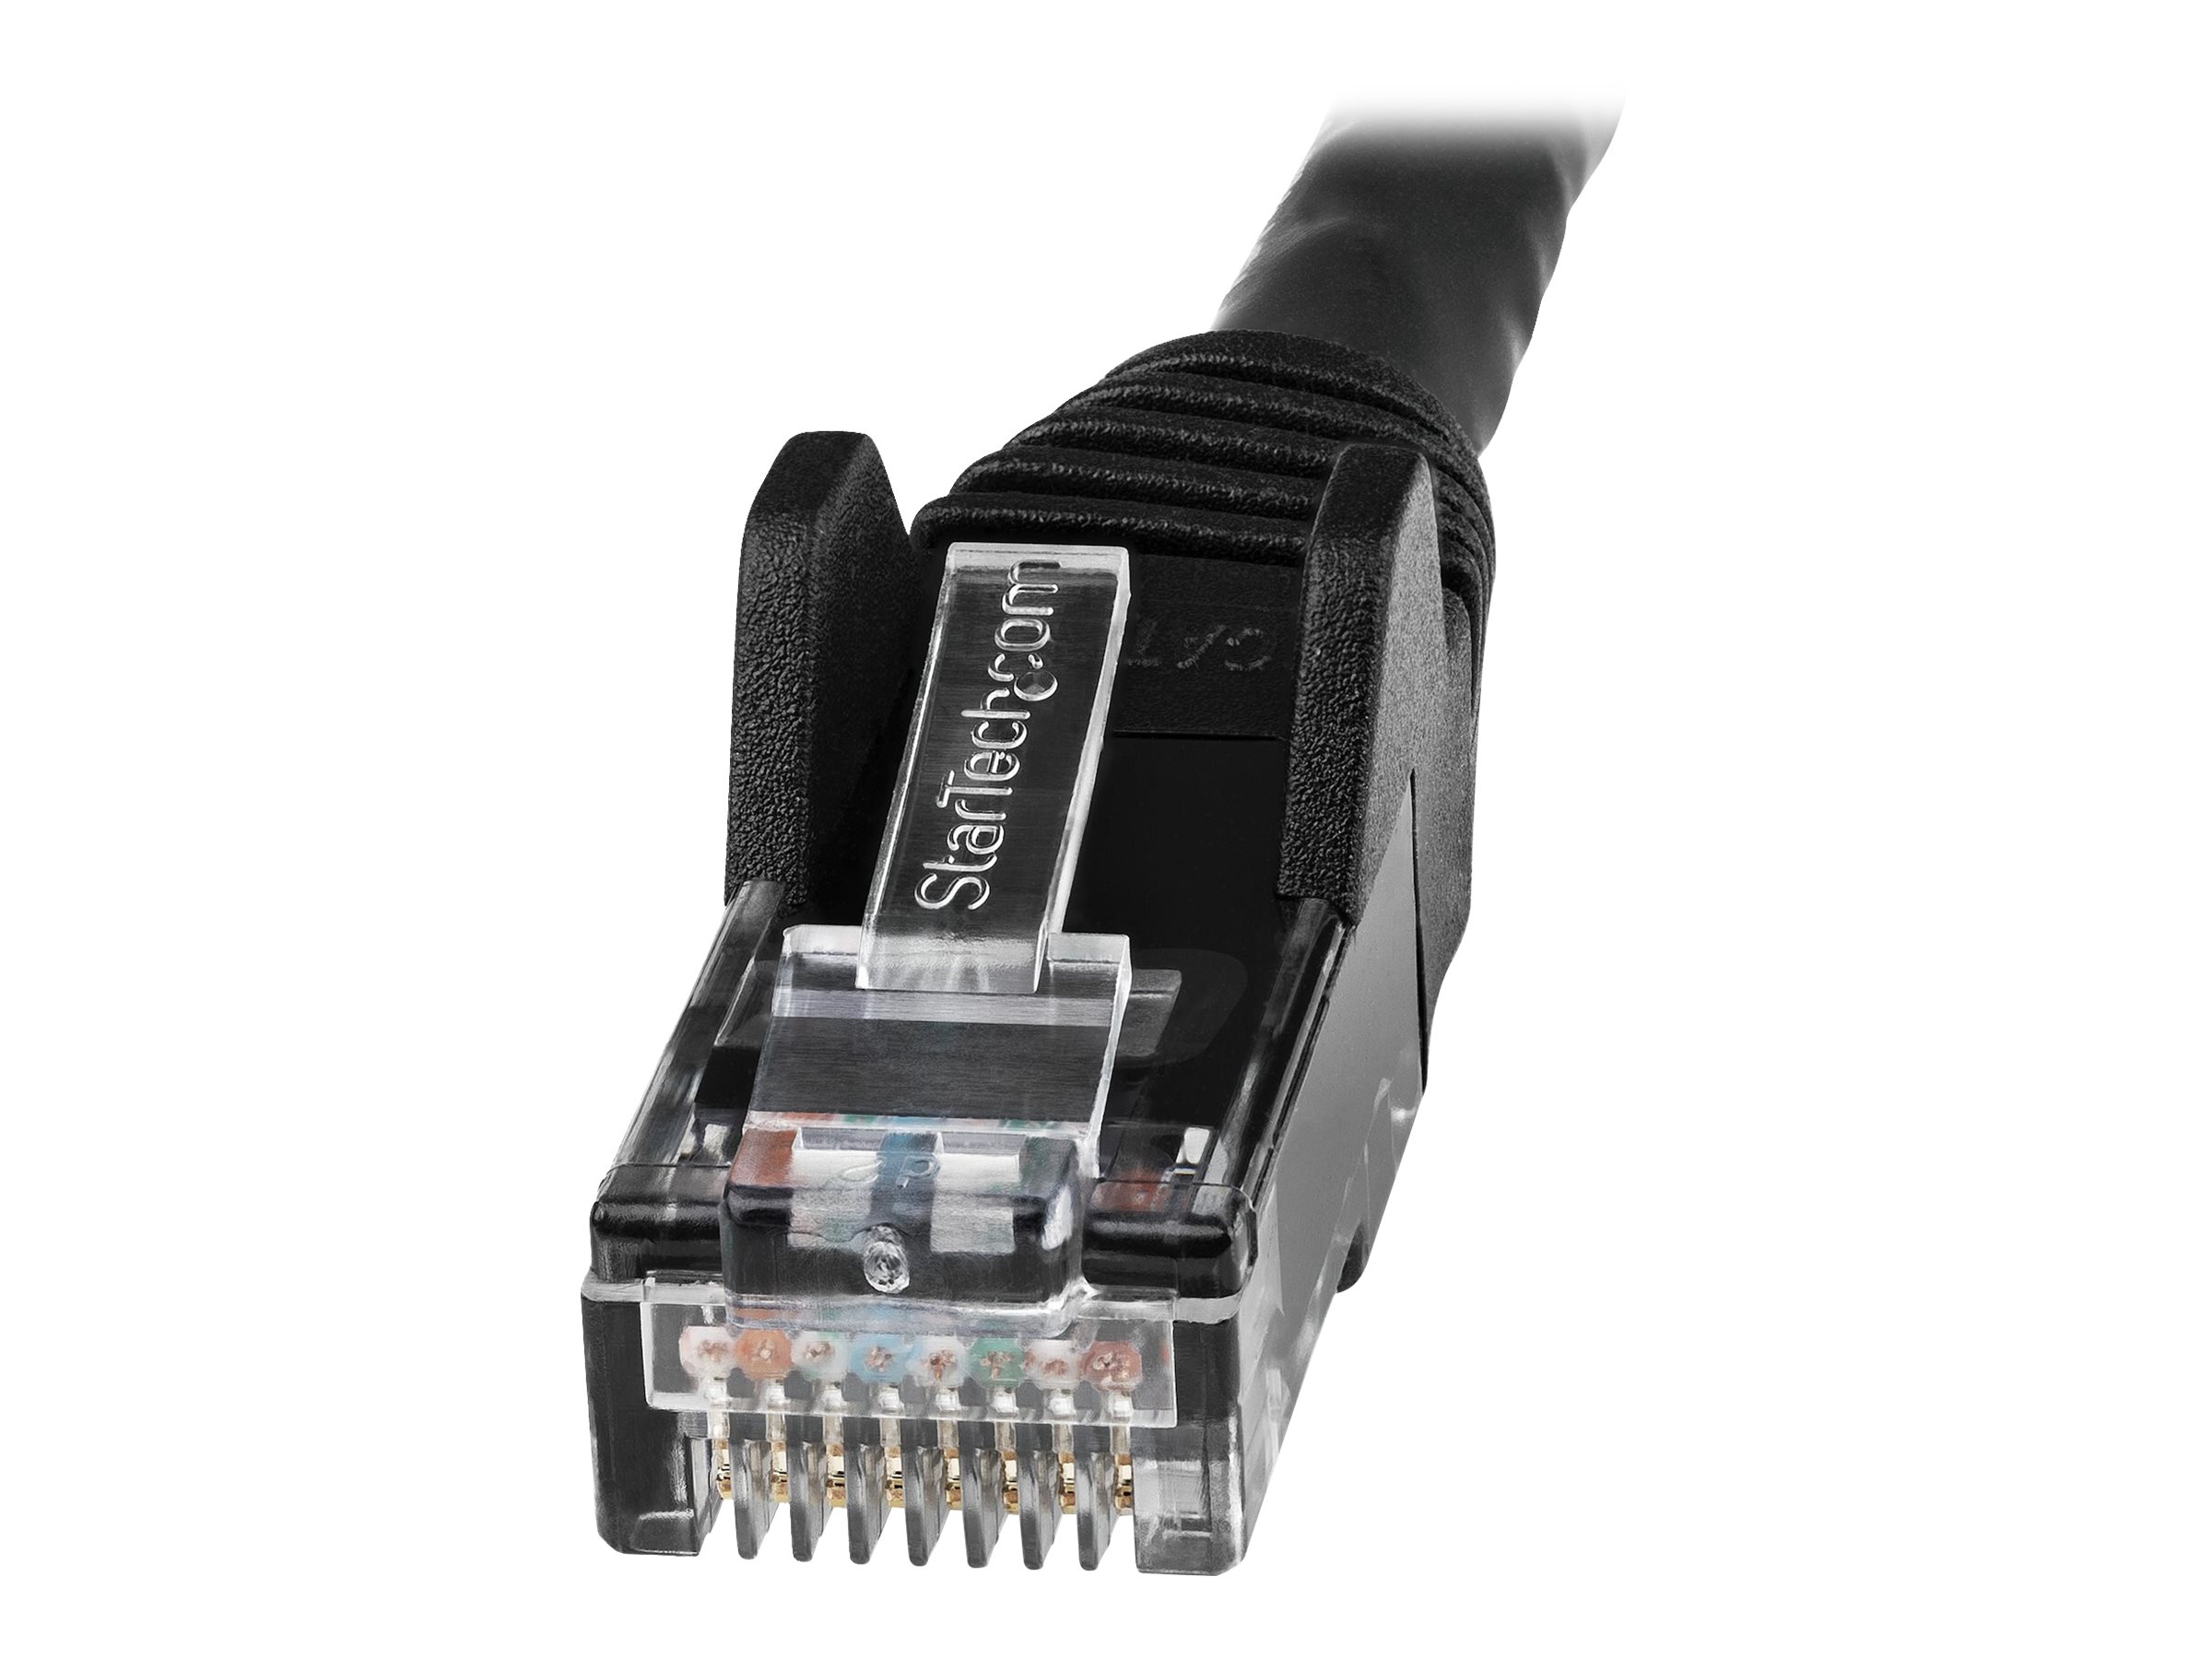 StarTech.com Câble Ethernet CAT6 1m - LSZH (Low Smoke Zero Halogen) - Cordon RJ45 UTP Anti-accrochage 10 GbE LAN - Câble Réseau Internet 650MHz 100W PoE - Noir - Snagless - 24AWG (N6LPATCH1MBK) - Cordon de raccordement - RJ-45 (M) pour RJ-45 (M) - 1 m - 6 mm - UTP - CAT 6 - sans crochet - noir - N6LPATCH1MBK - Câbles à paire torsadée